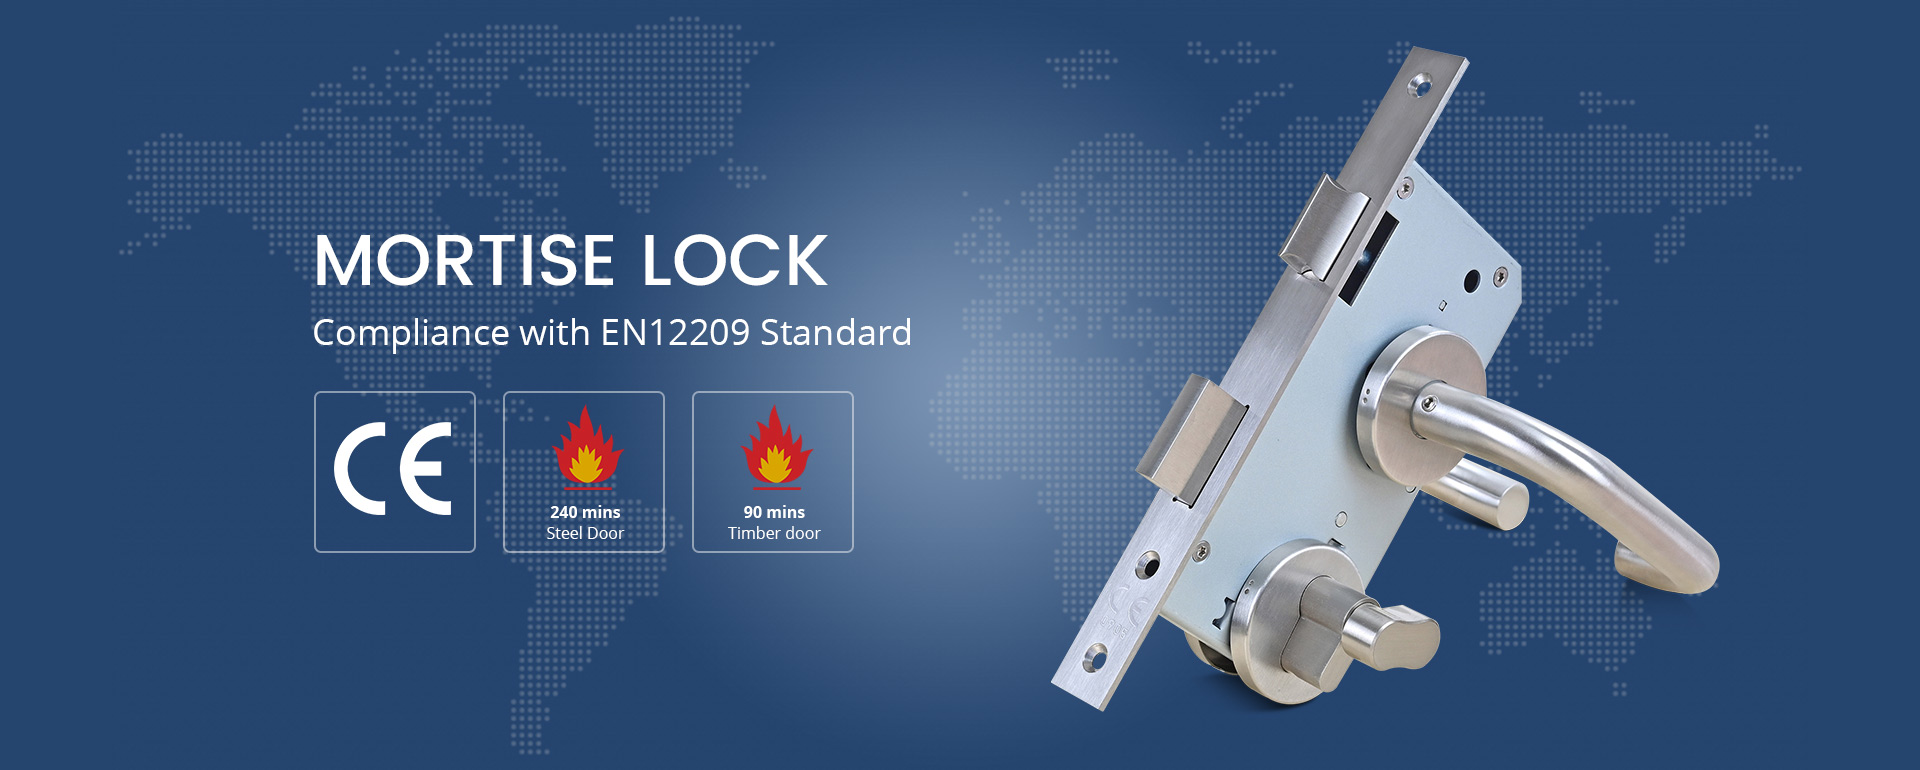 CE EN12209 Fireproof Mortise Door Lock